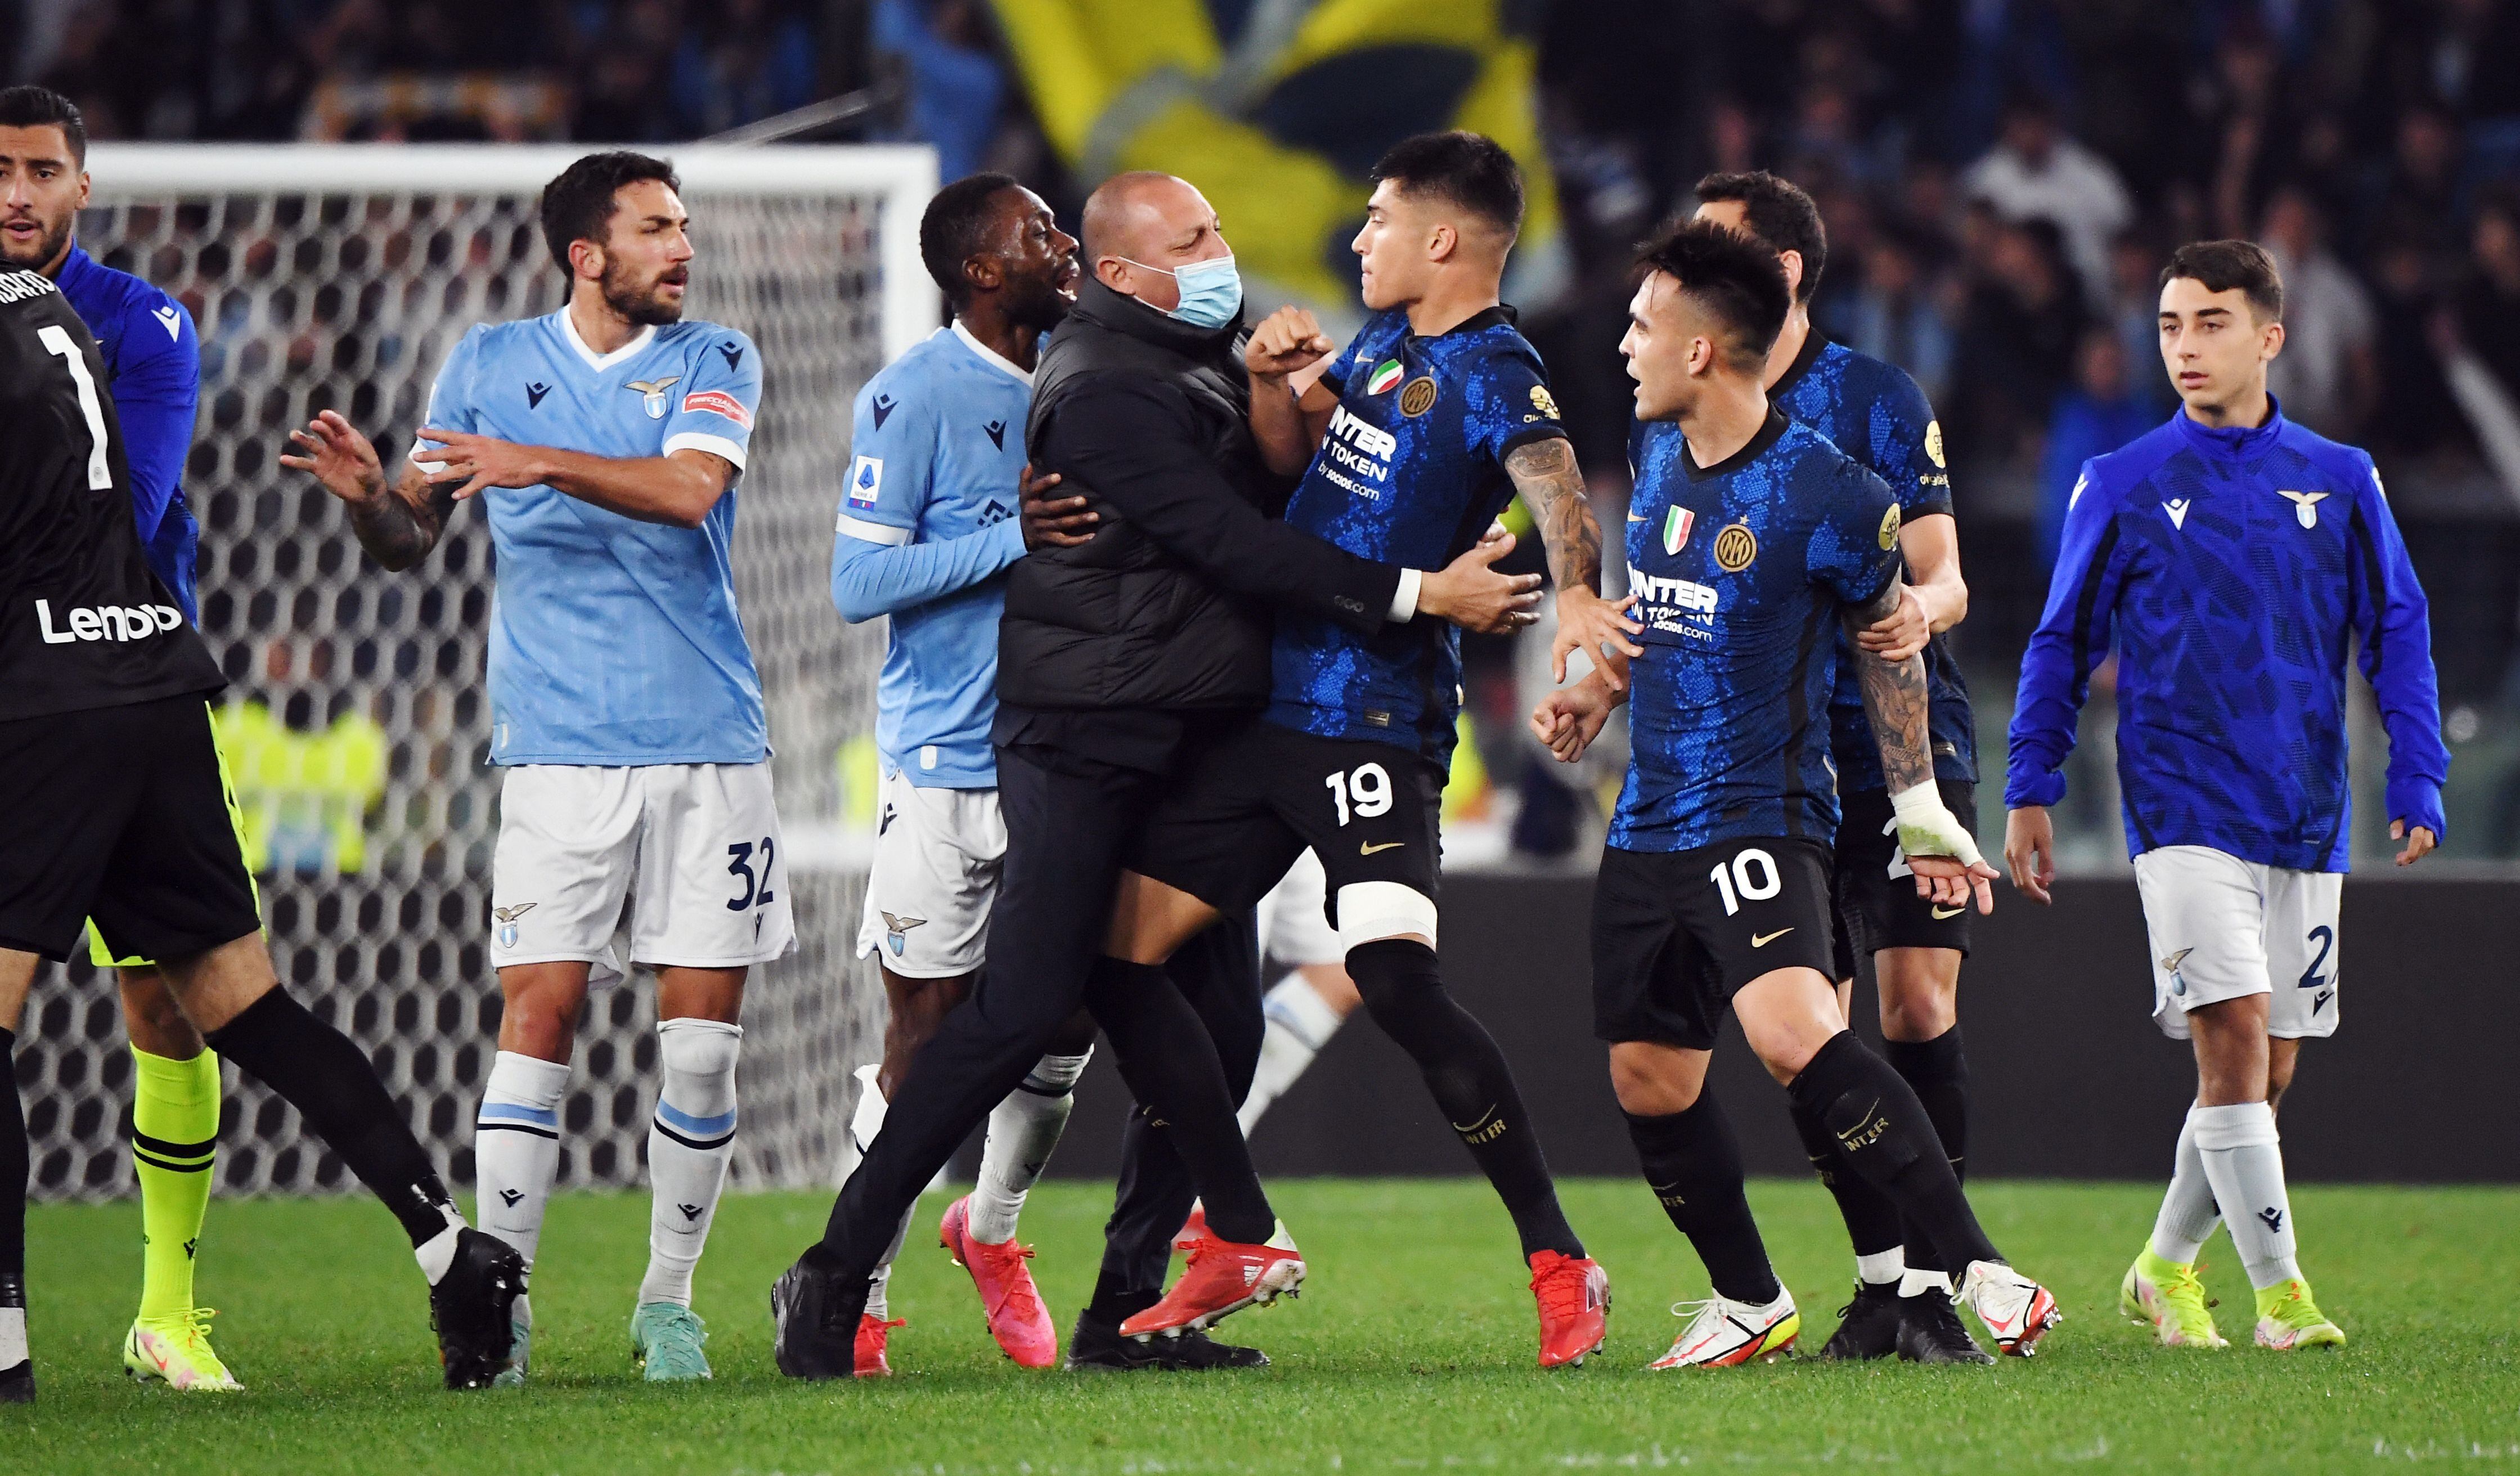 El salto de Luiz Felipe sobre los hombros de Joaquín Correa desató una trifulca entre jugadores de Lazio e Inter (REUTERS/Alberto Lingria)